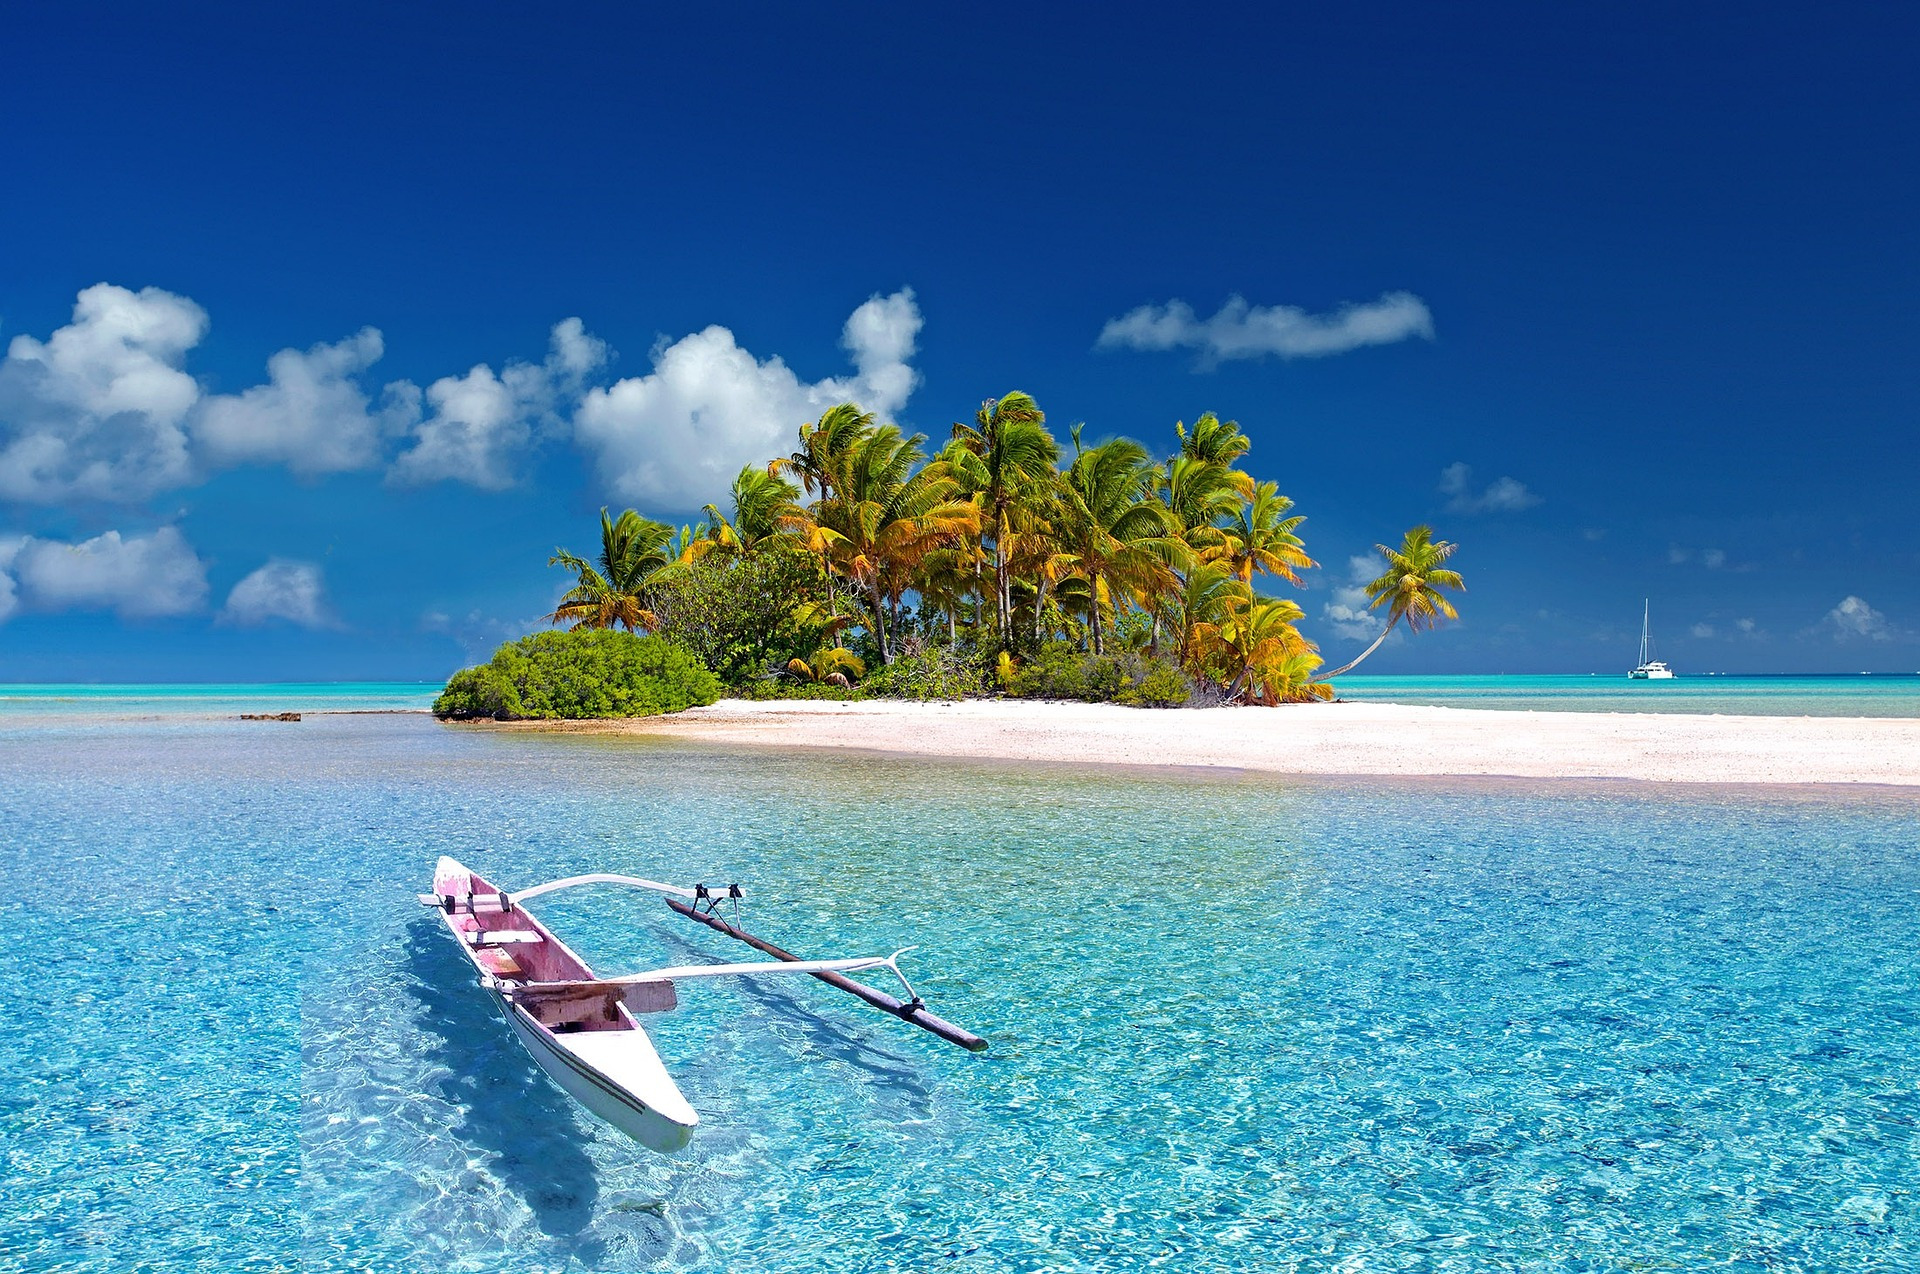 Остров в каноэ окруженной прозрачной голубой водой